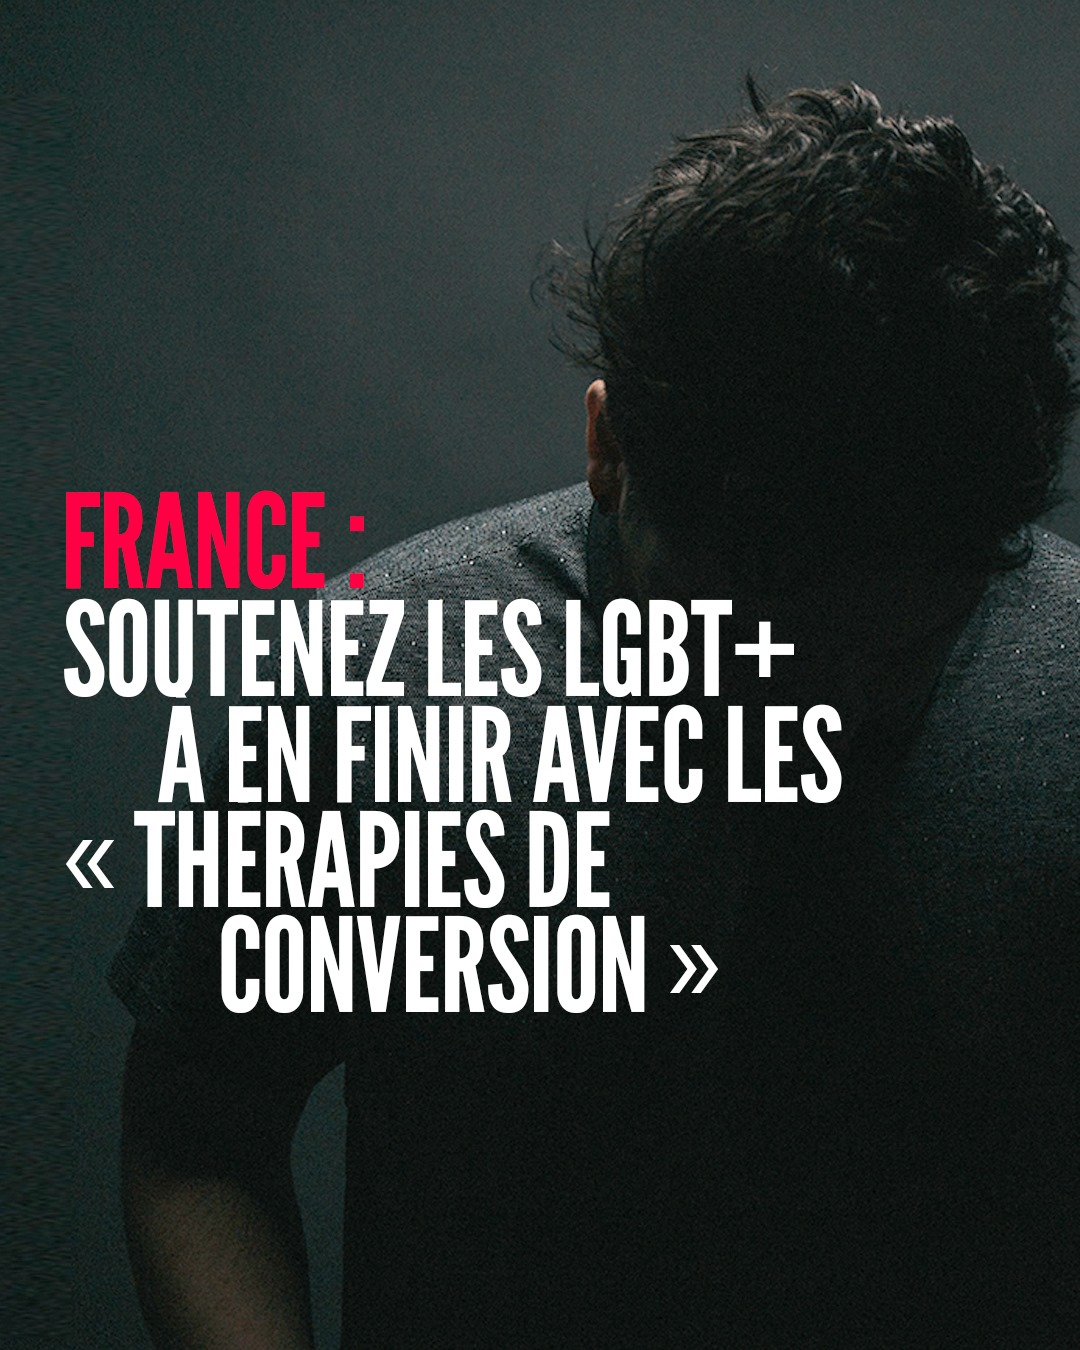 France : soutenez les personnes LGBT+ a en finir avec les « thérapies de conversion »